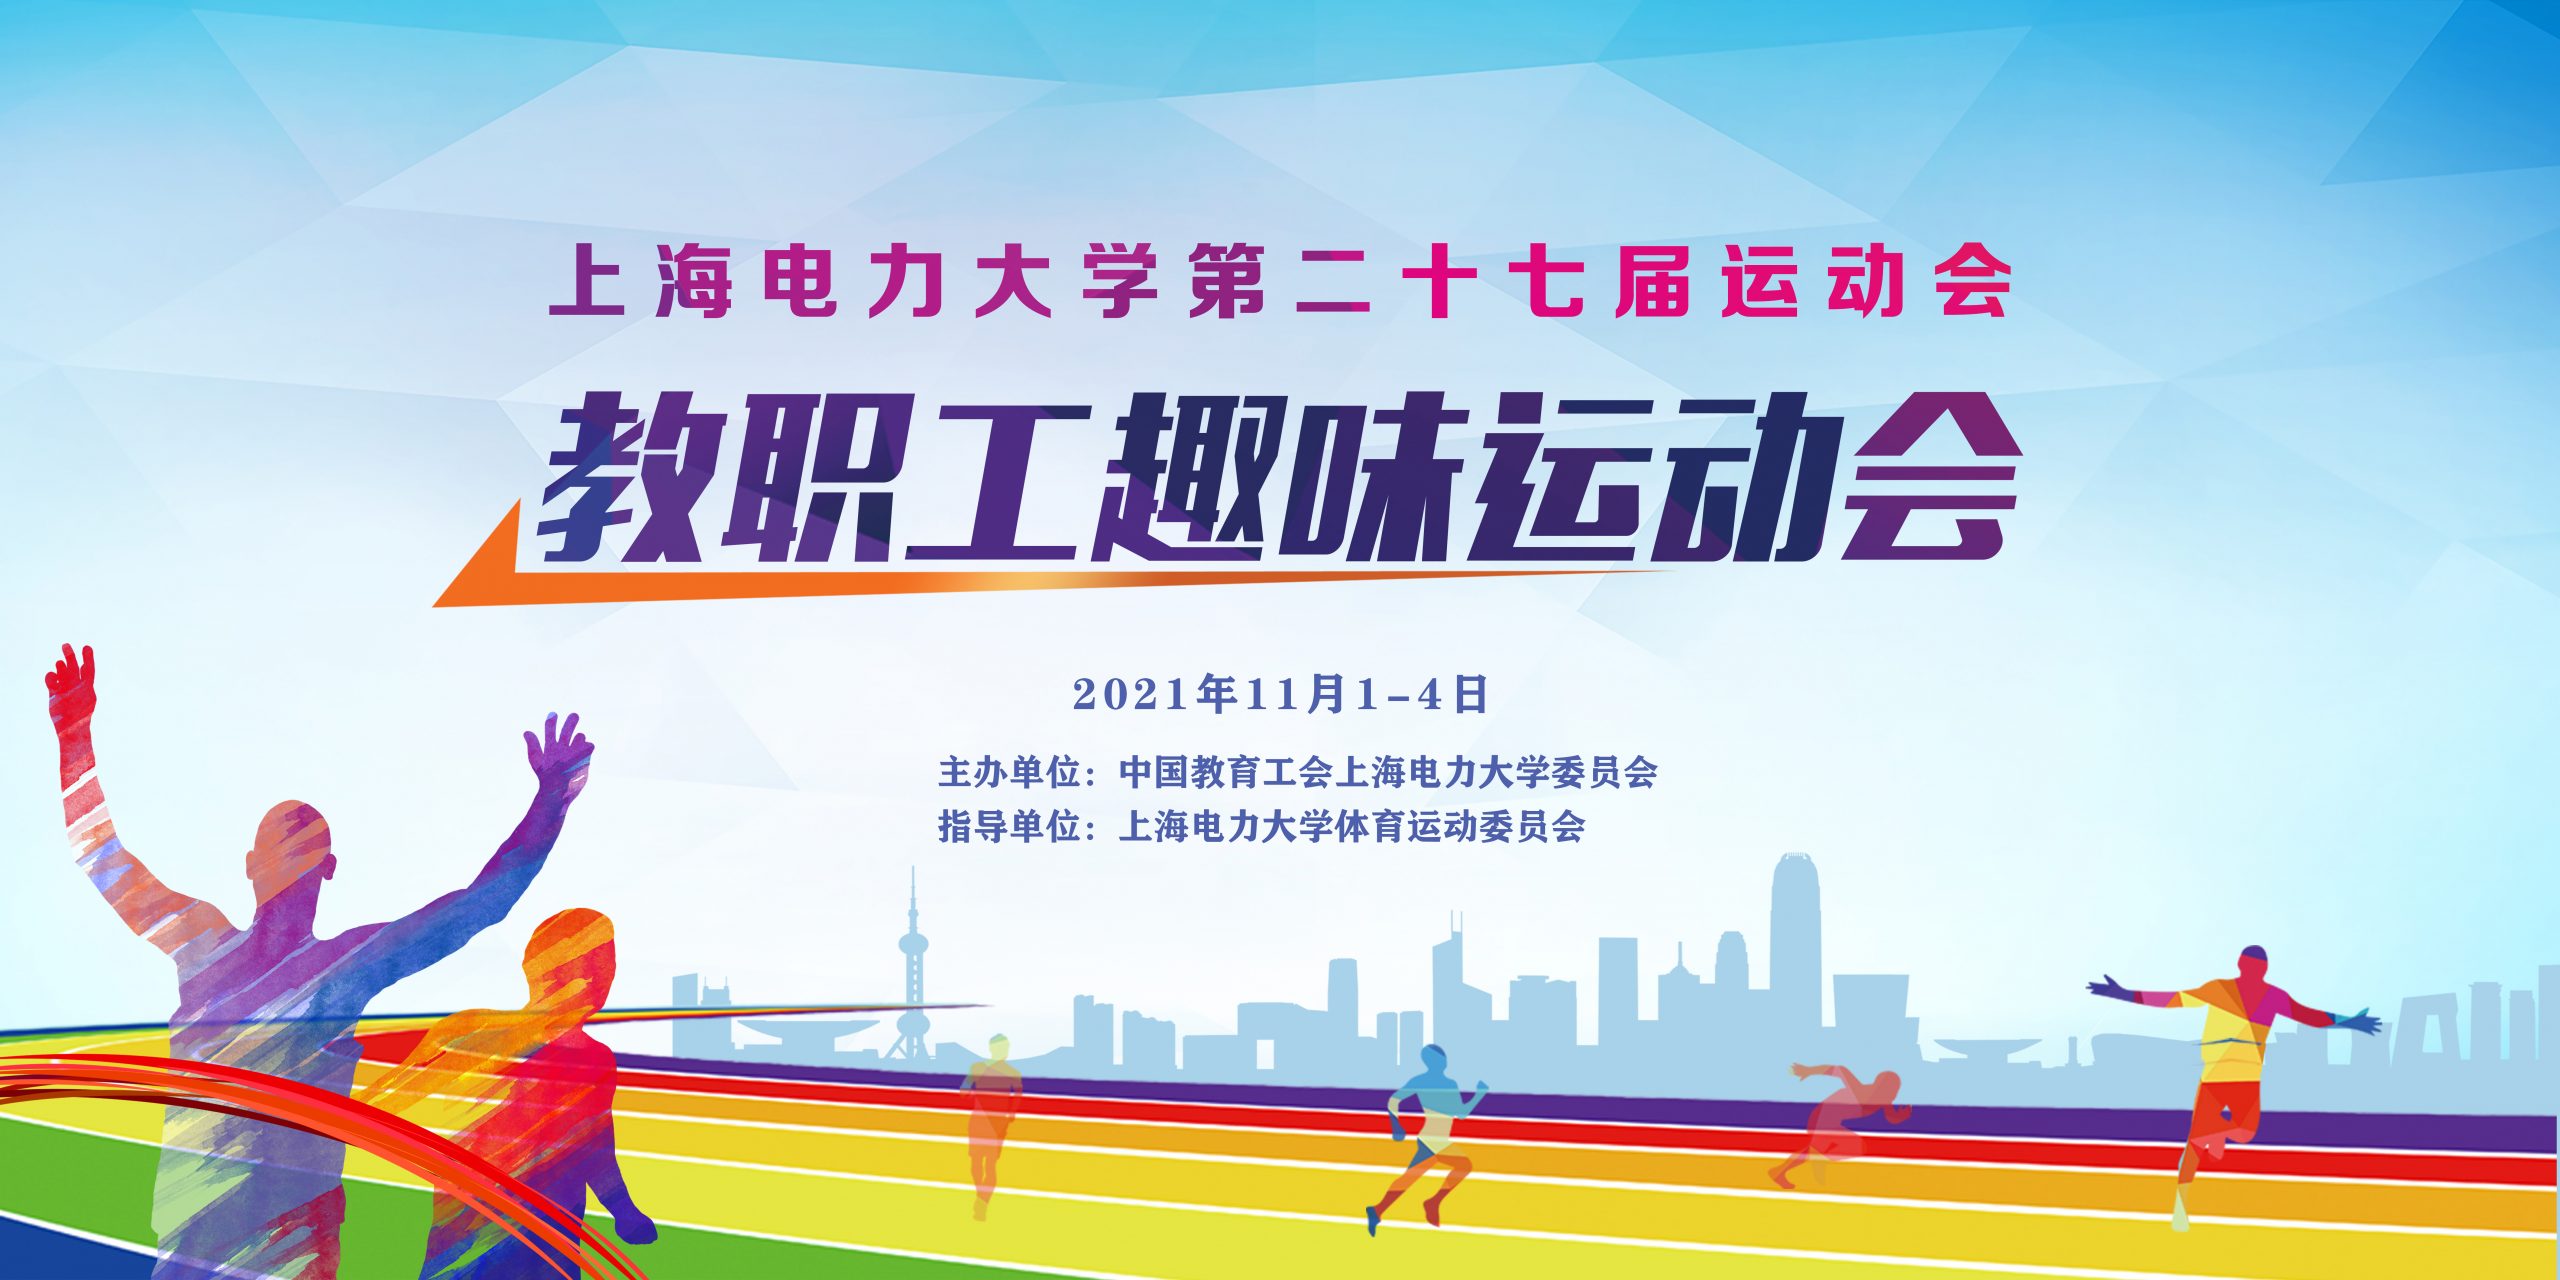 上海电力大学第二十七届教职工趣味运动会